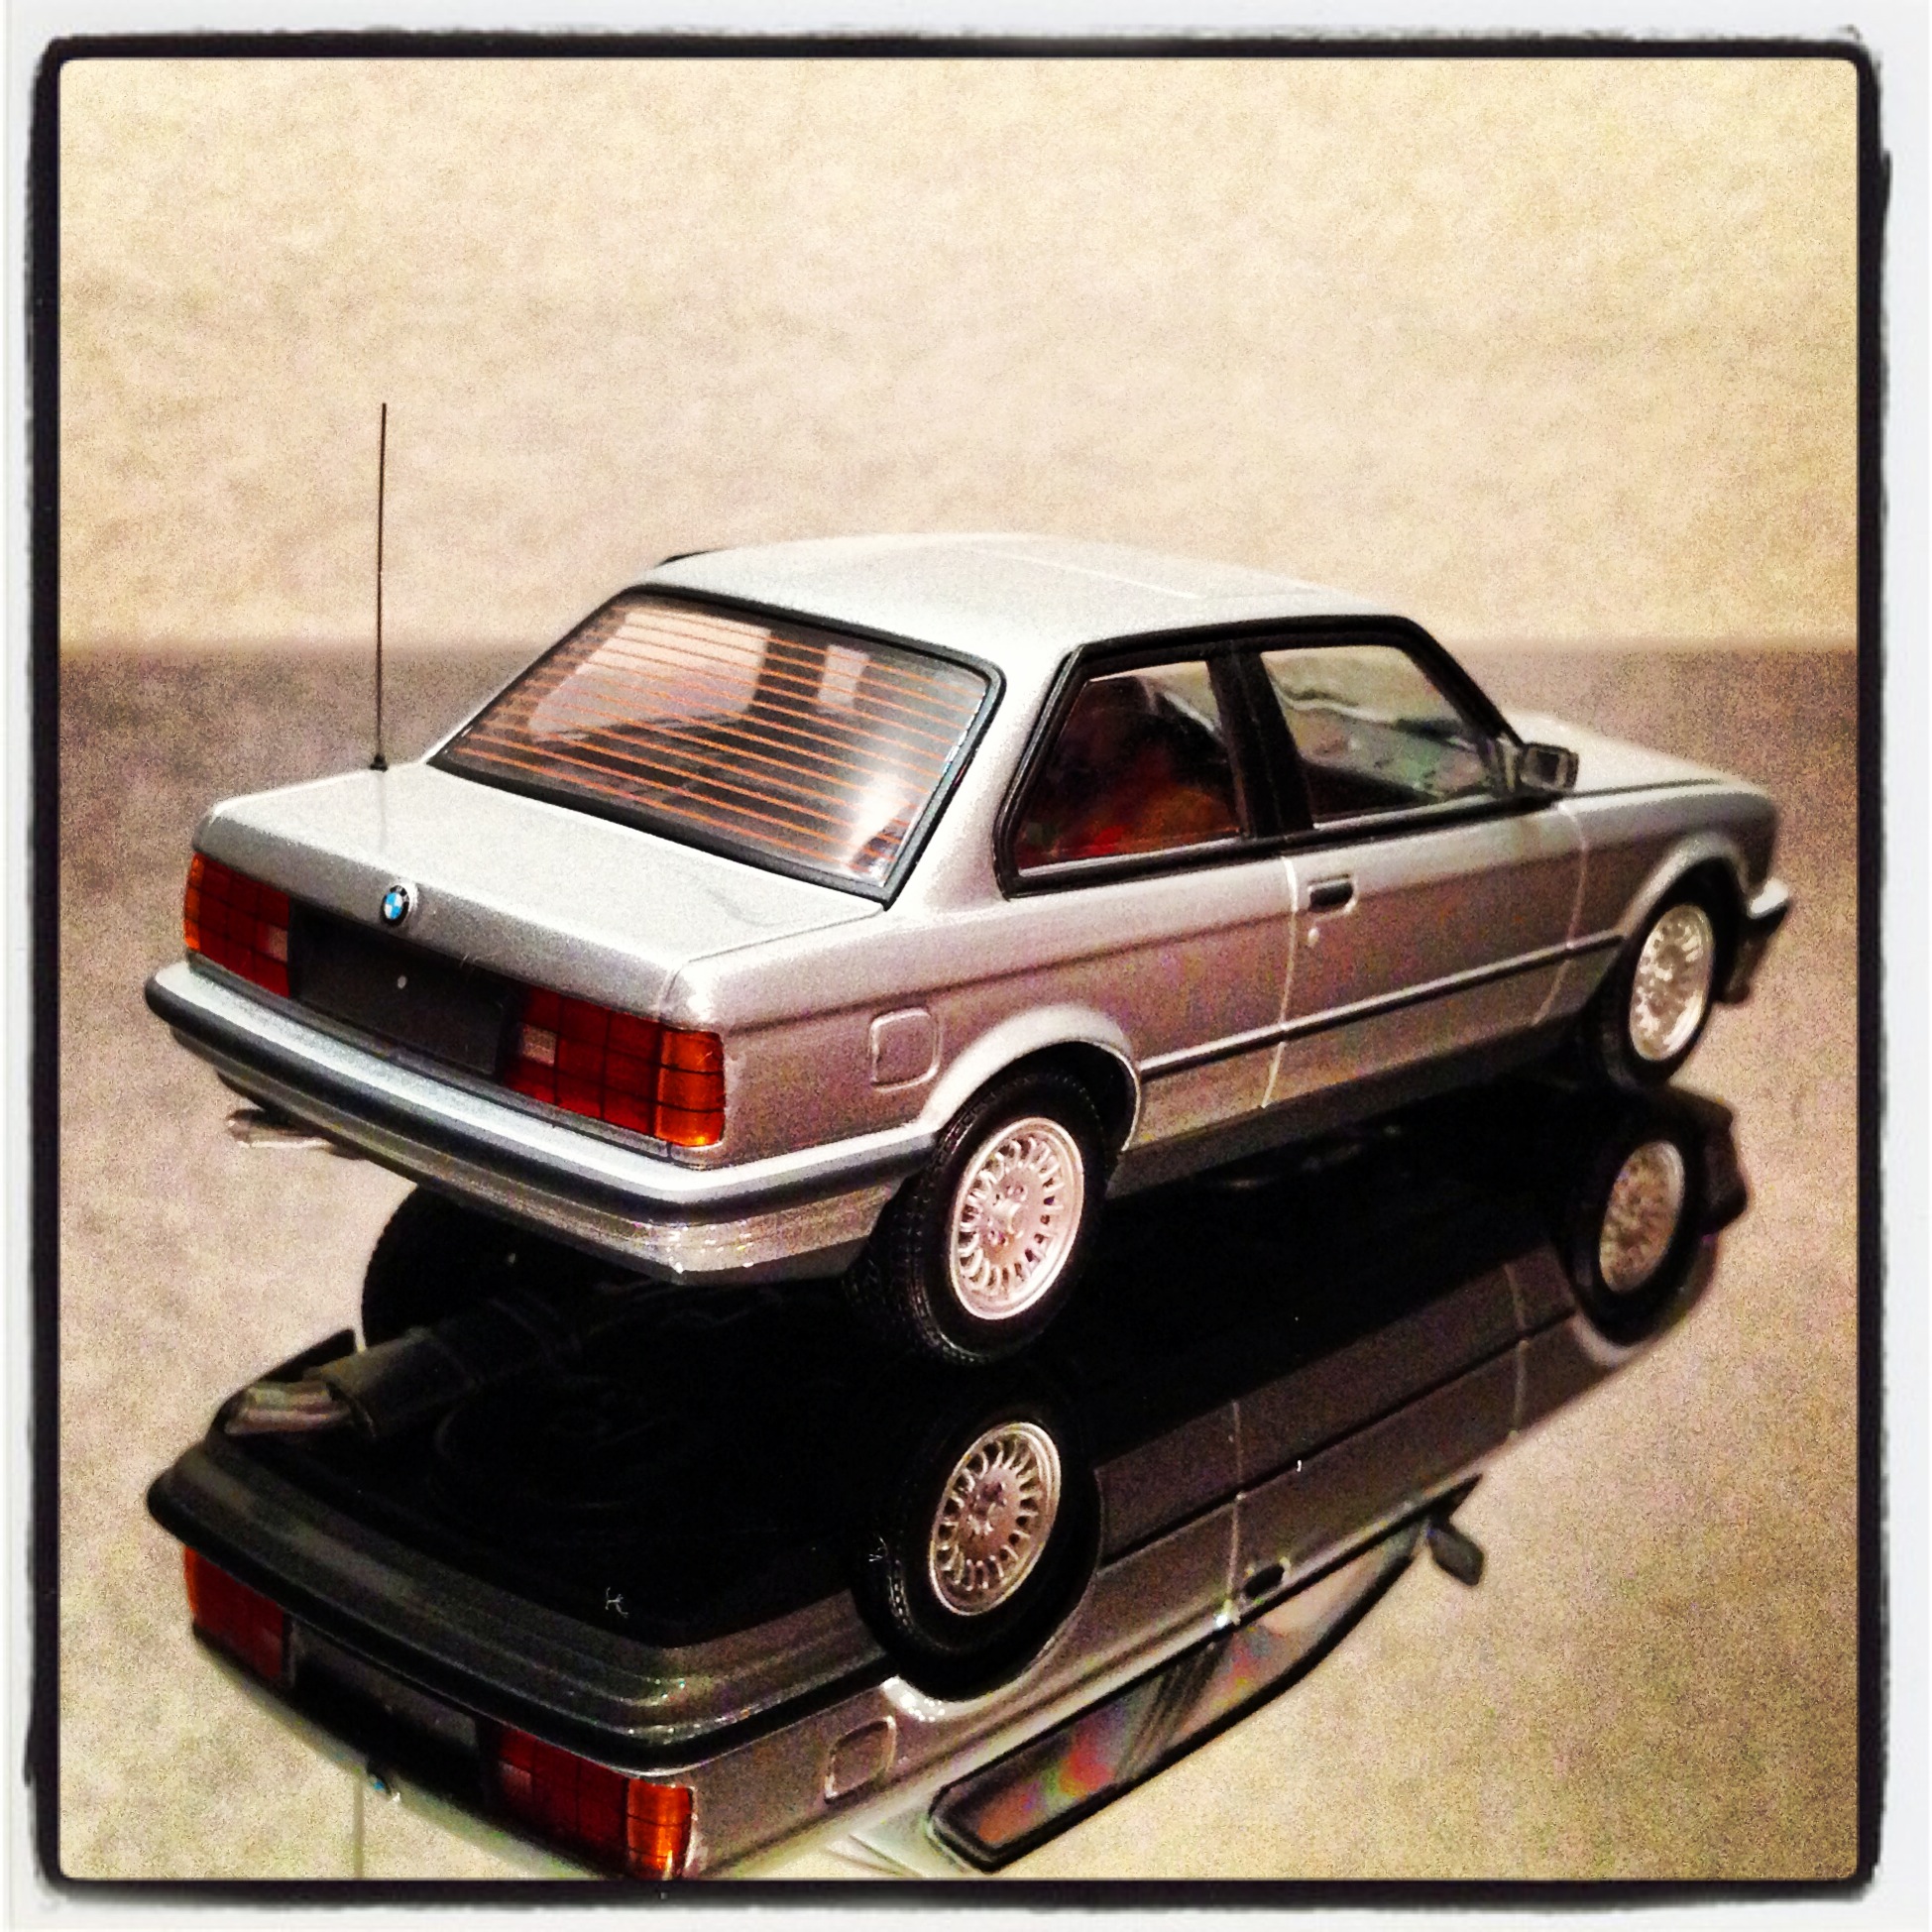 BMW 3 series coupe (E30) silver, le  1 of 1,536pcs. (minichamps)